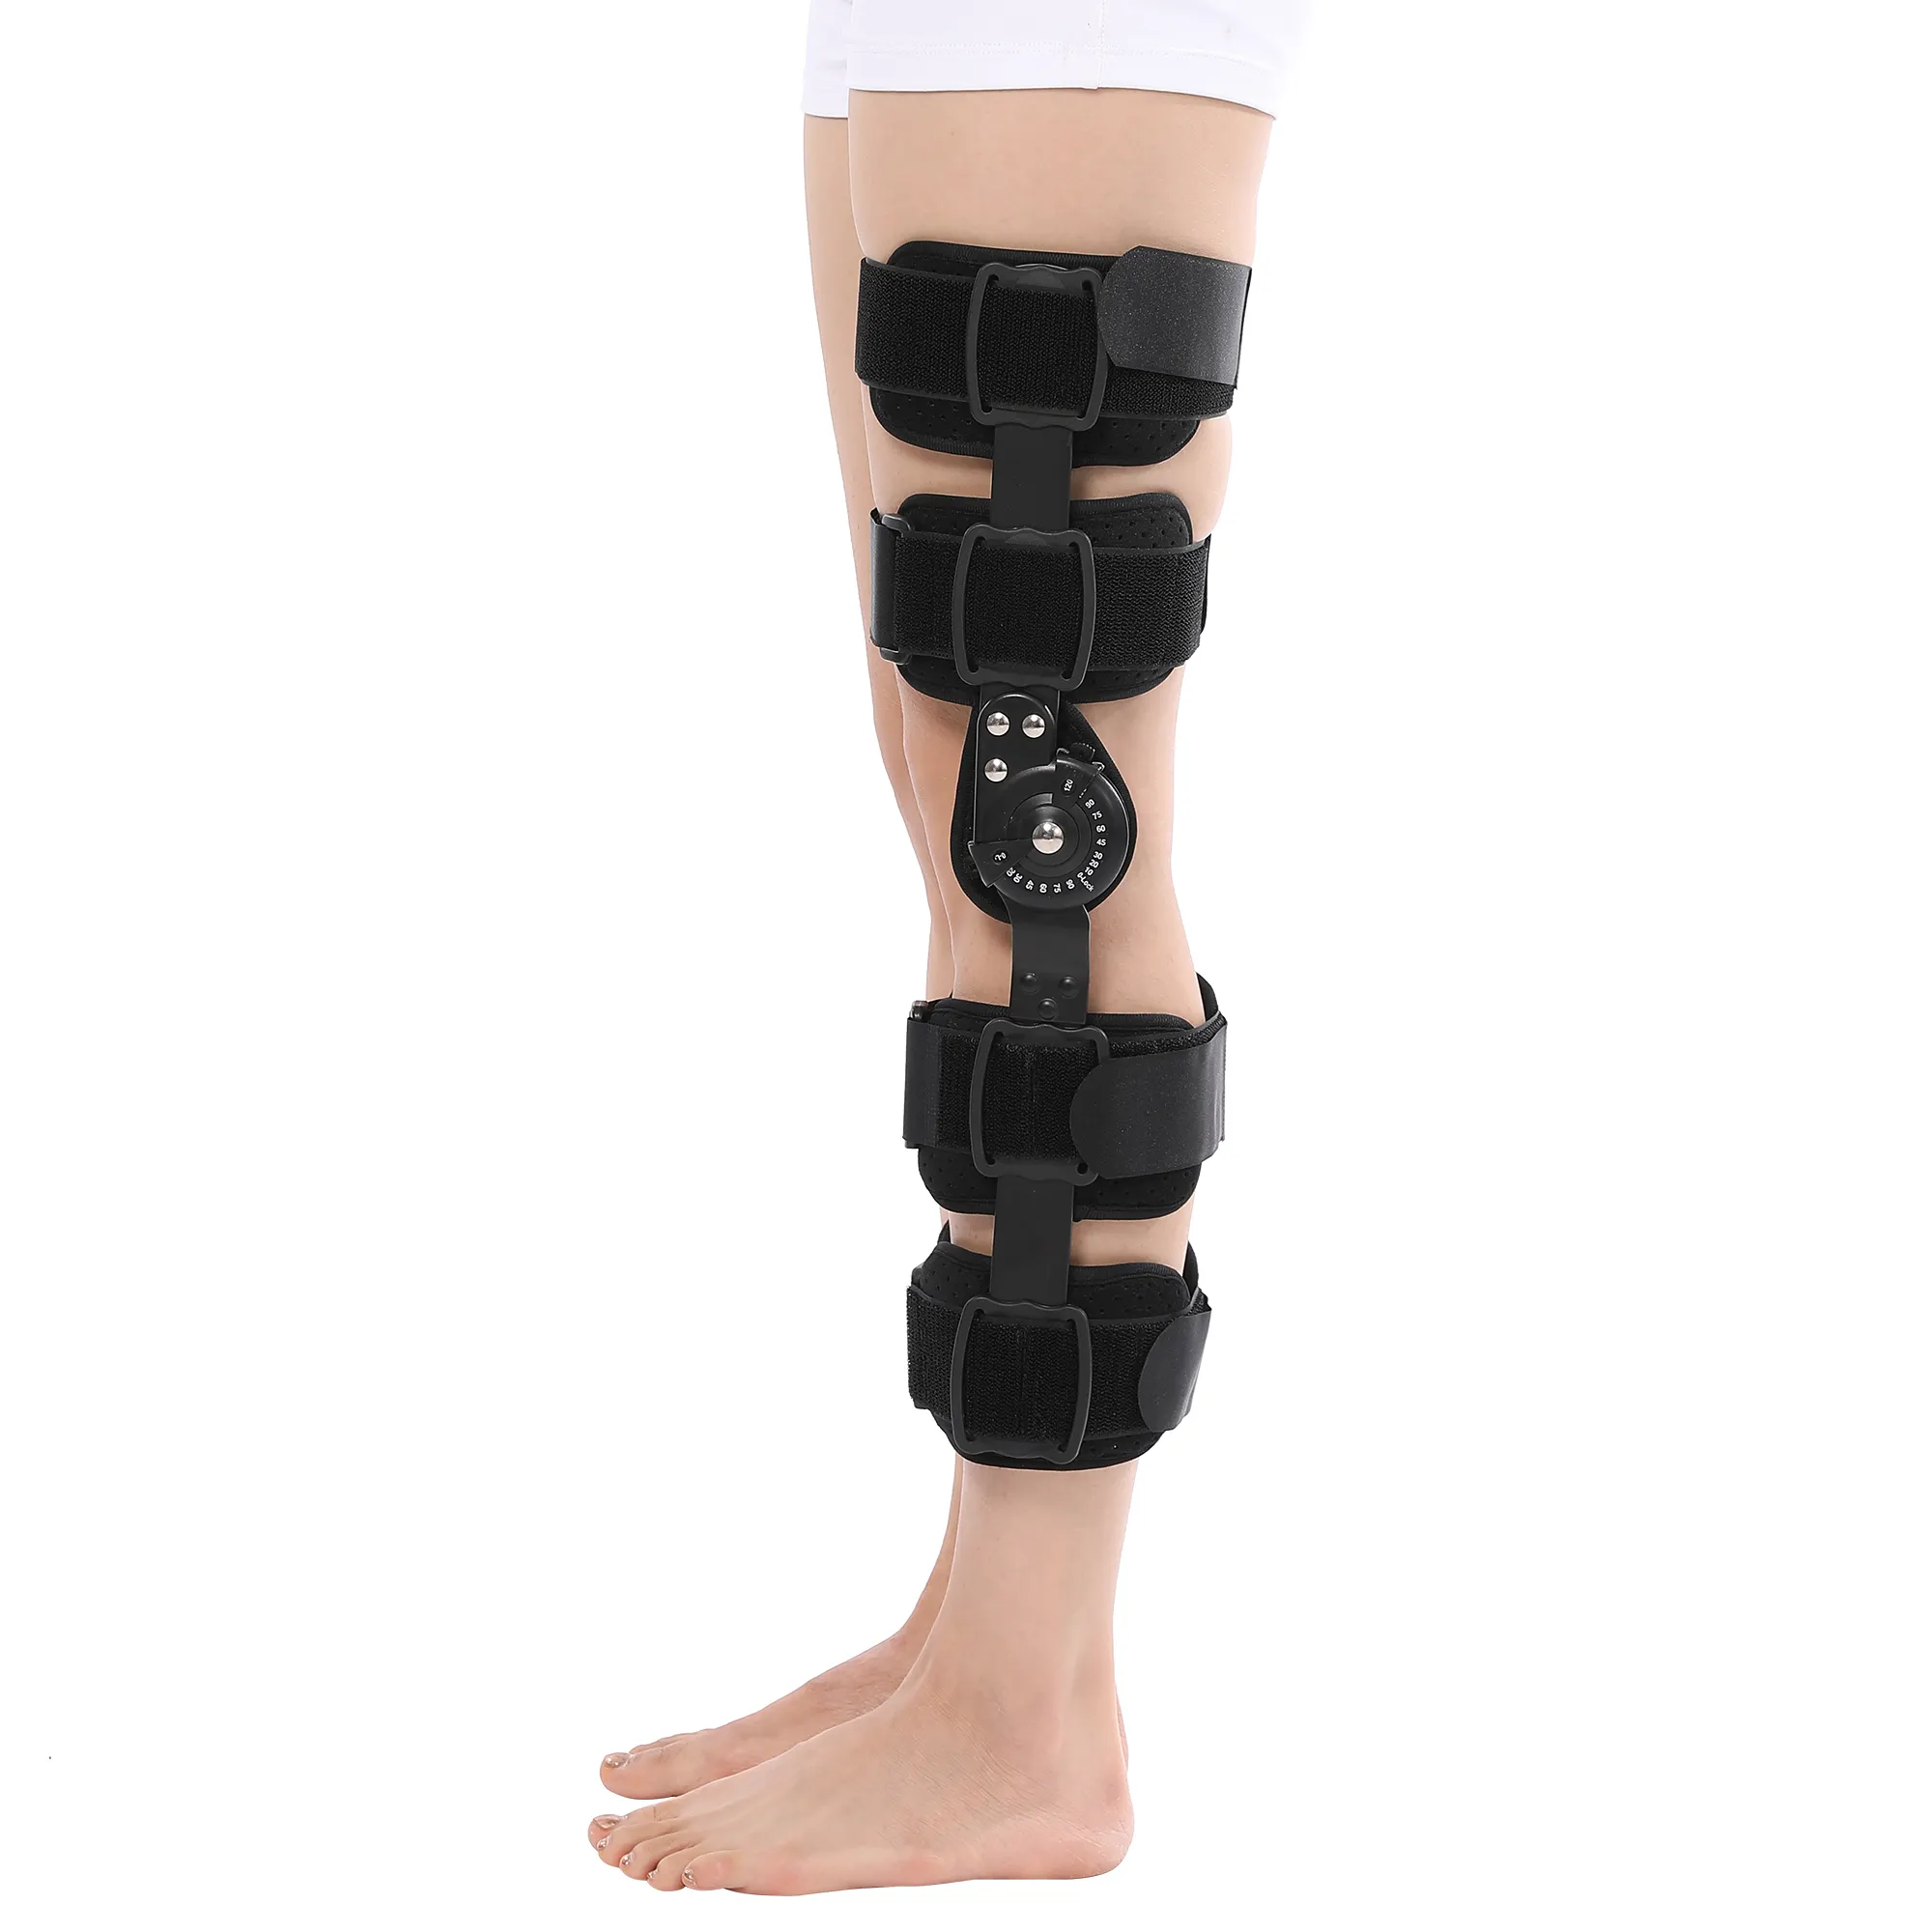 Rodillera ortopédica de ROM OEM, soporte de ortosis con bisagras, ángulo ajustable, rodillera médica para fracturas, poste op o rodilla